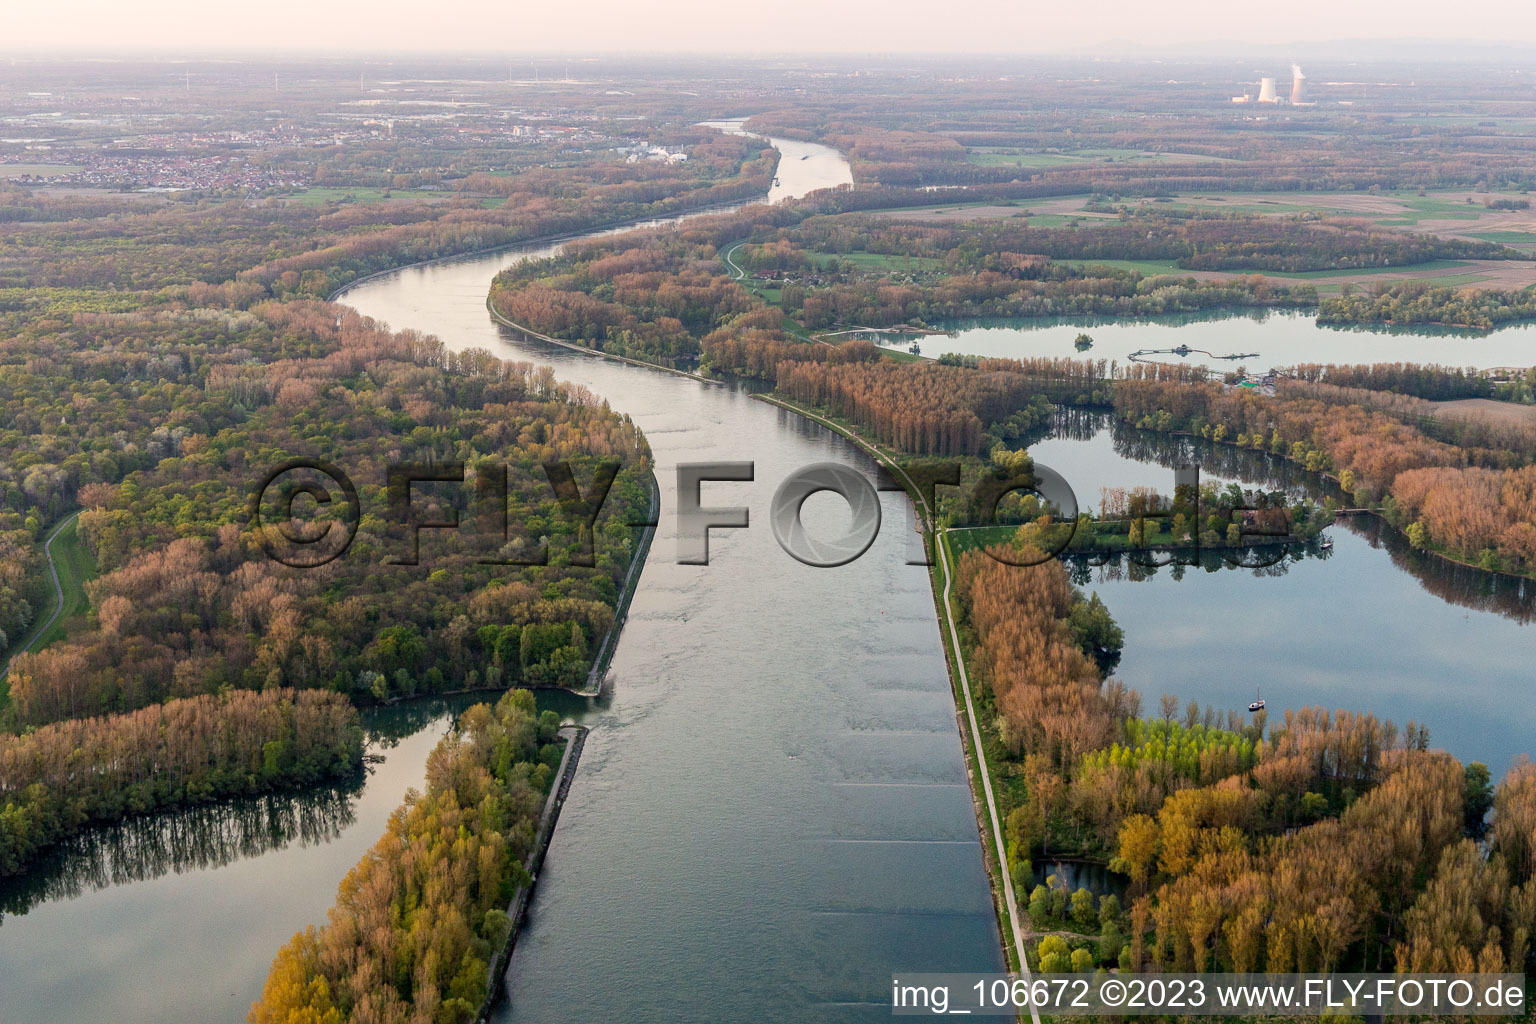 Luftbild von Leimersheim, Rhein im Bundesland Rheinland-Pfalz, Deutschland